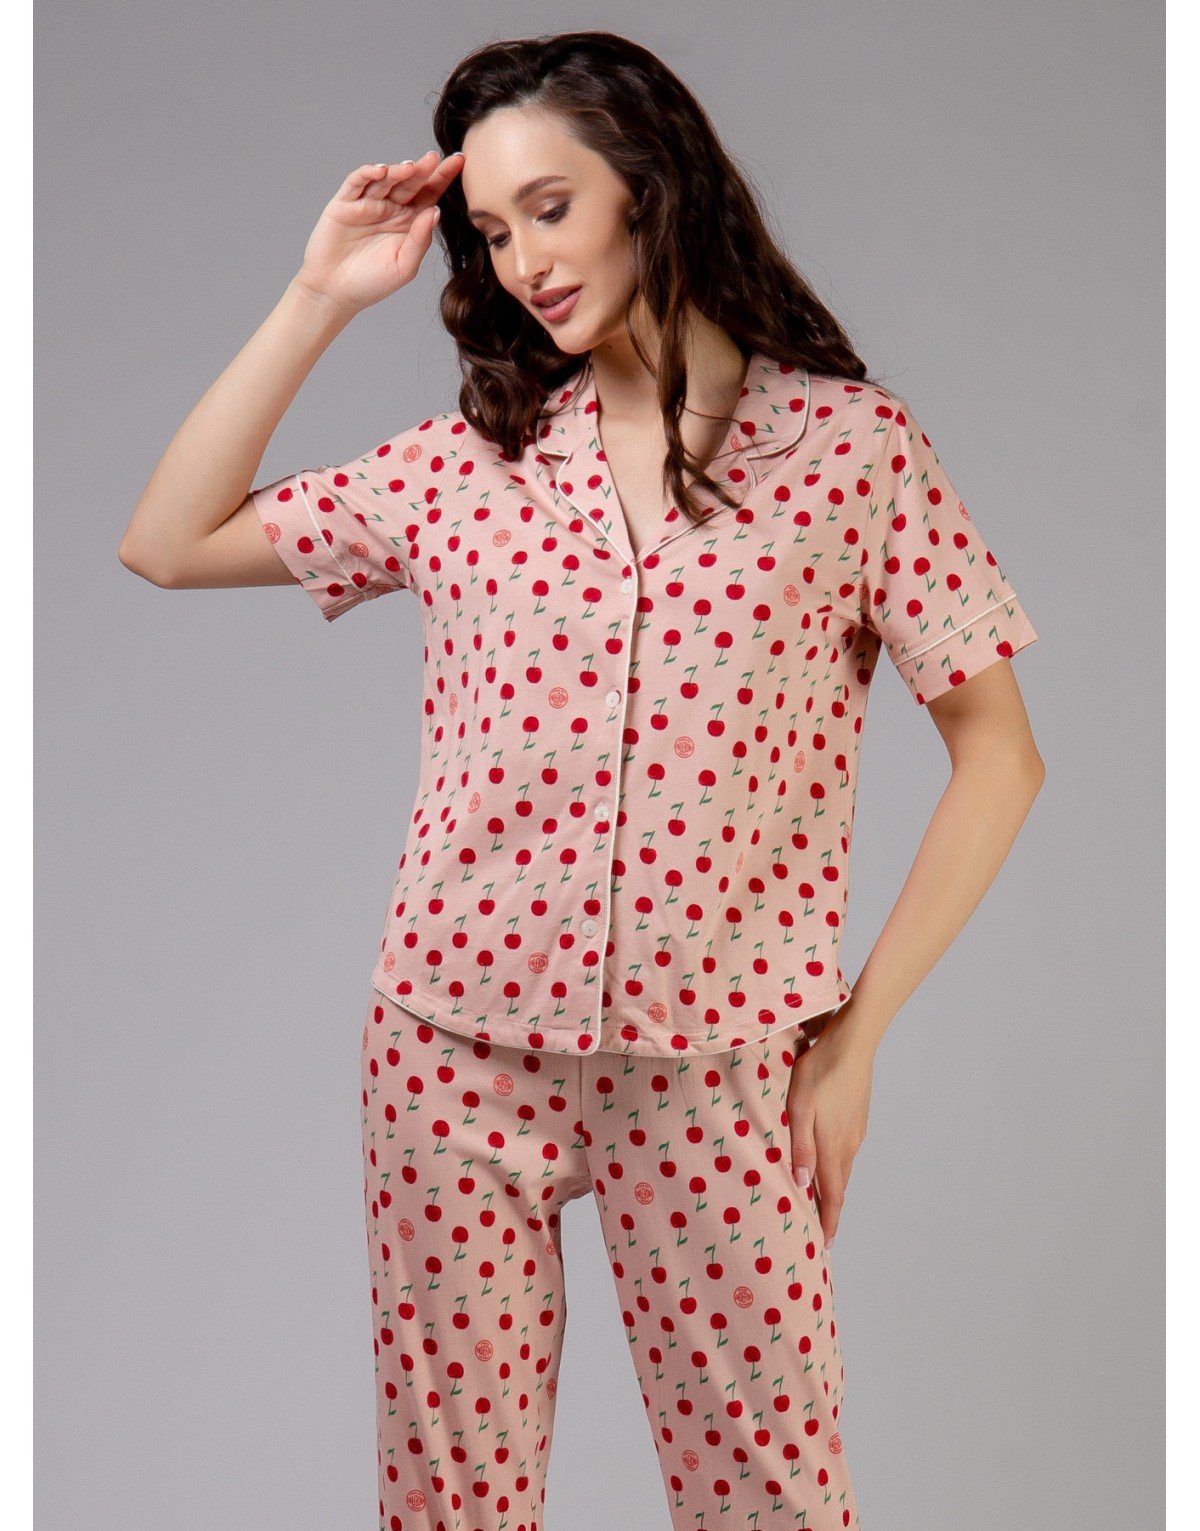 Хлопко-модальная пижама с вишенками